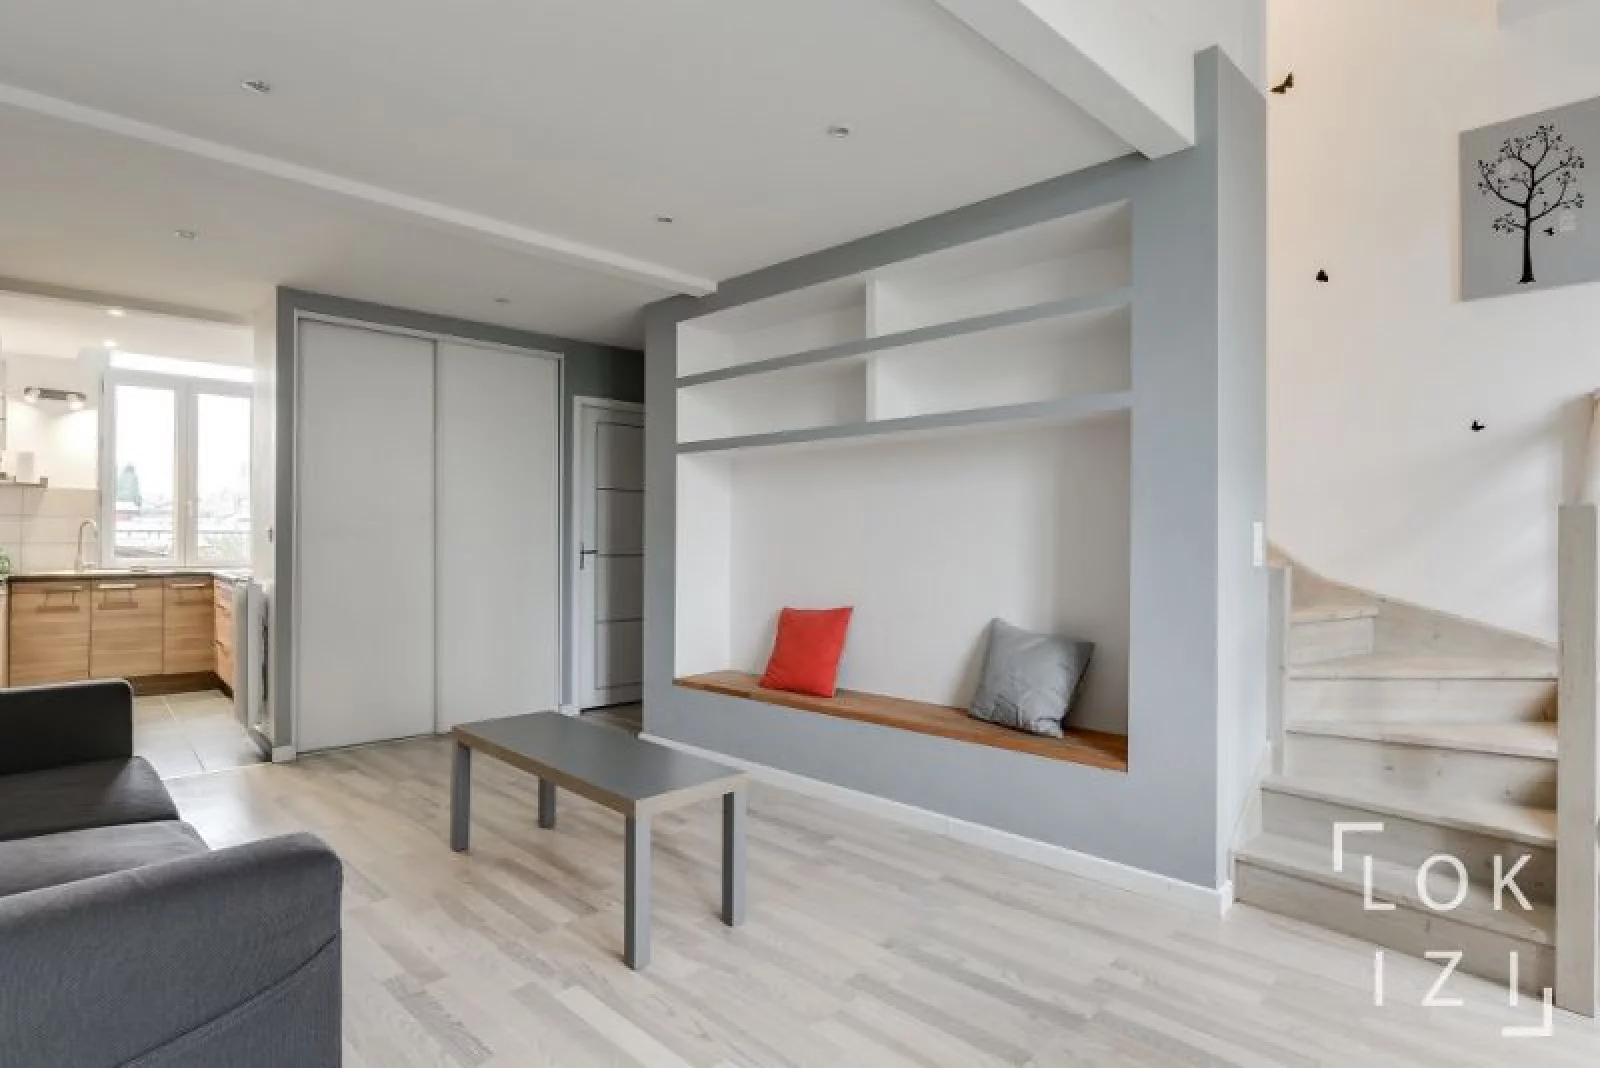 Location appartement meublé duplex 65m² (Bordeaux centre)